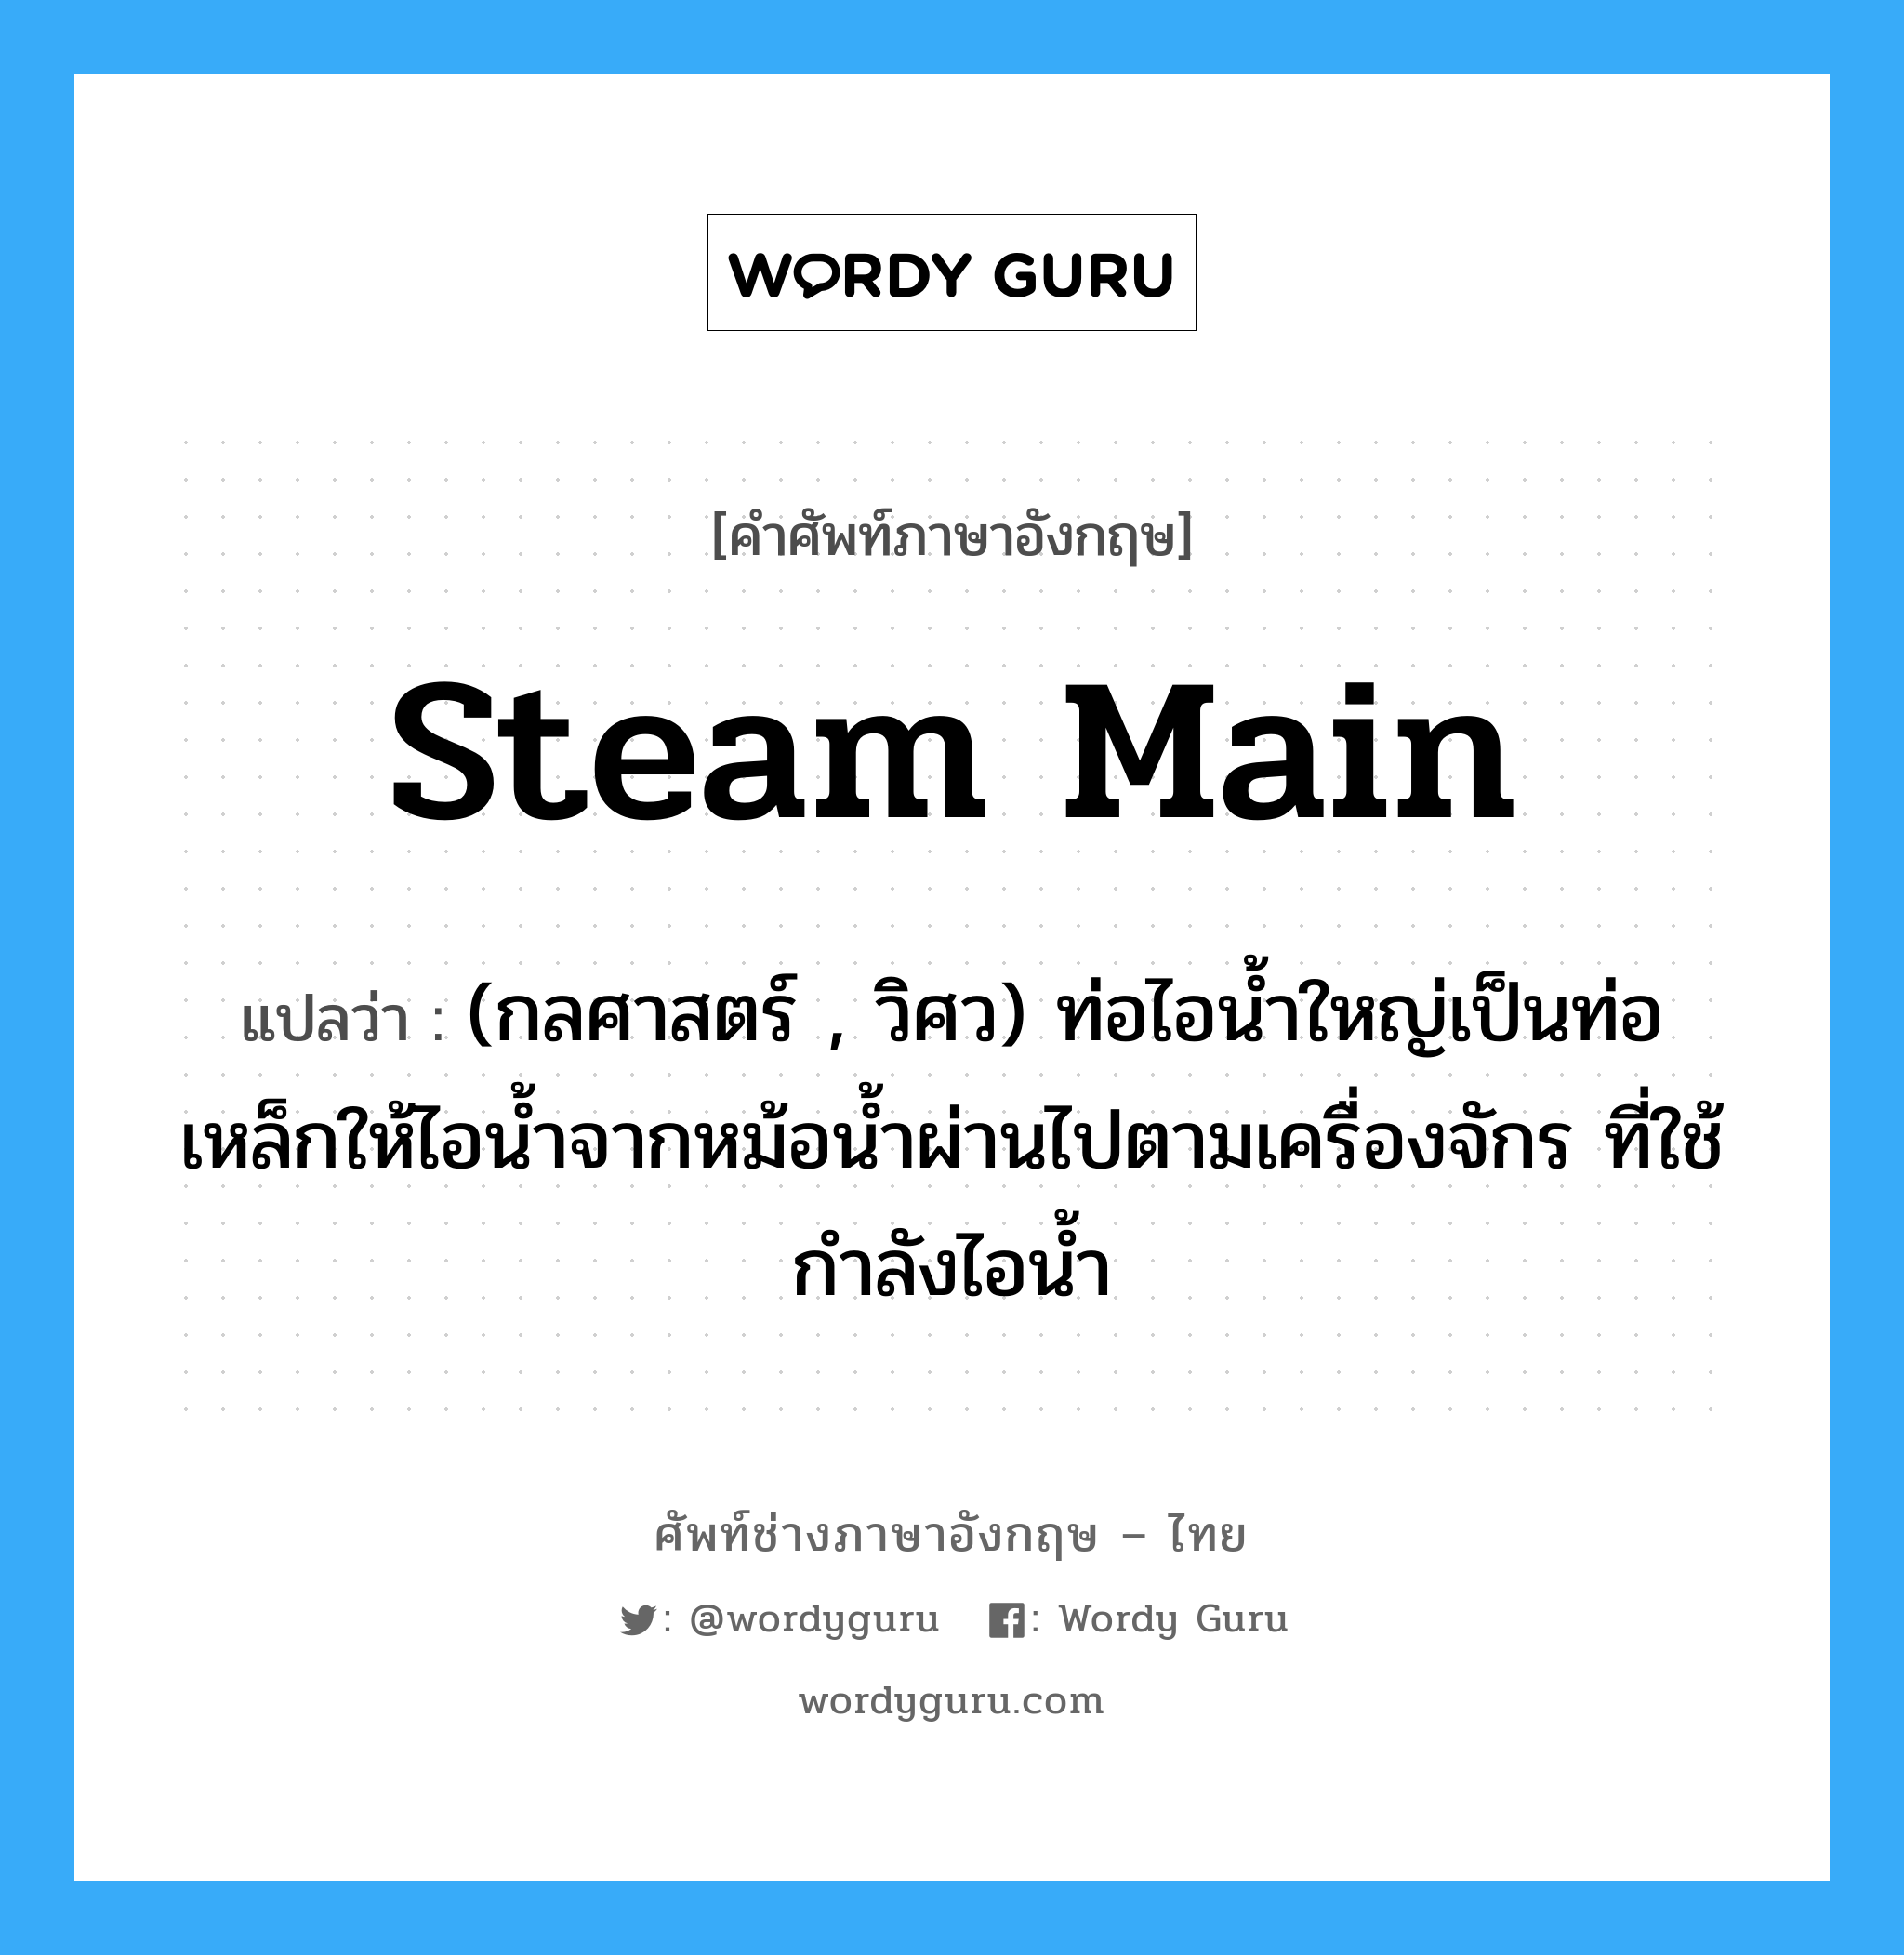 steam main แปลว่า?, คำศัพท์ช่างภาษาอังกฤษ - ไทย steam main คำศัพท์ภาษาอังกฤษ steam main แปลว่า (กลศาสตร์ , วิศว) ท่อไอน้ำใหญ่เป็นท่อเหล็กให้ไอน้ำจากหม้อน้ำผ่านไปตามเครื่องจักร ที่ใช้กำลังไอน้ำ